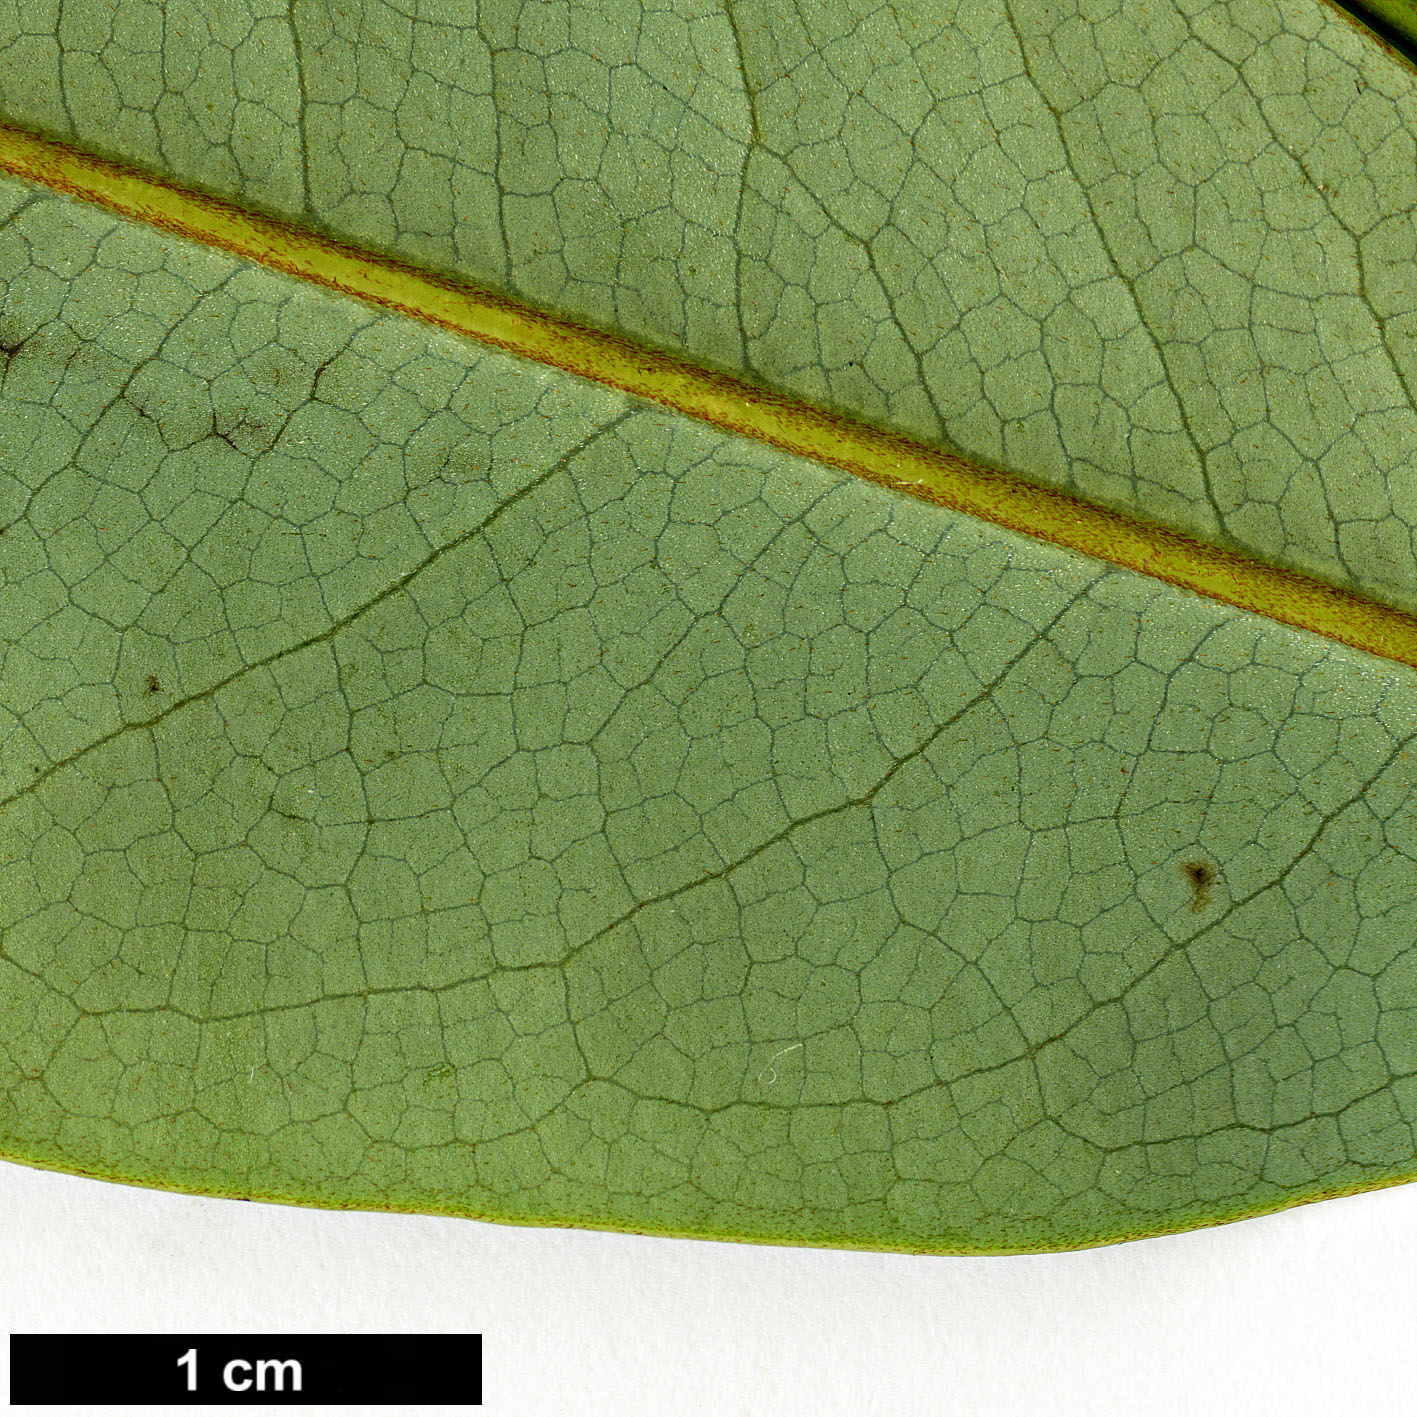 High resolution image: Family: Magnoliaceae - Genus: Magnolia - Taxon: leveilleana